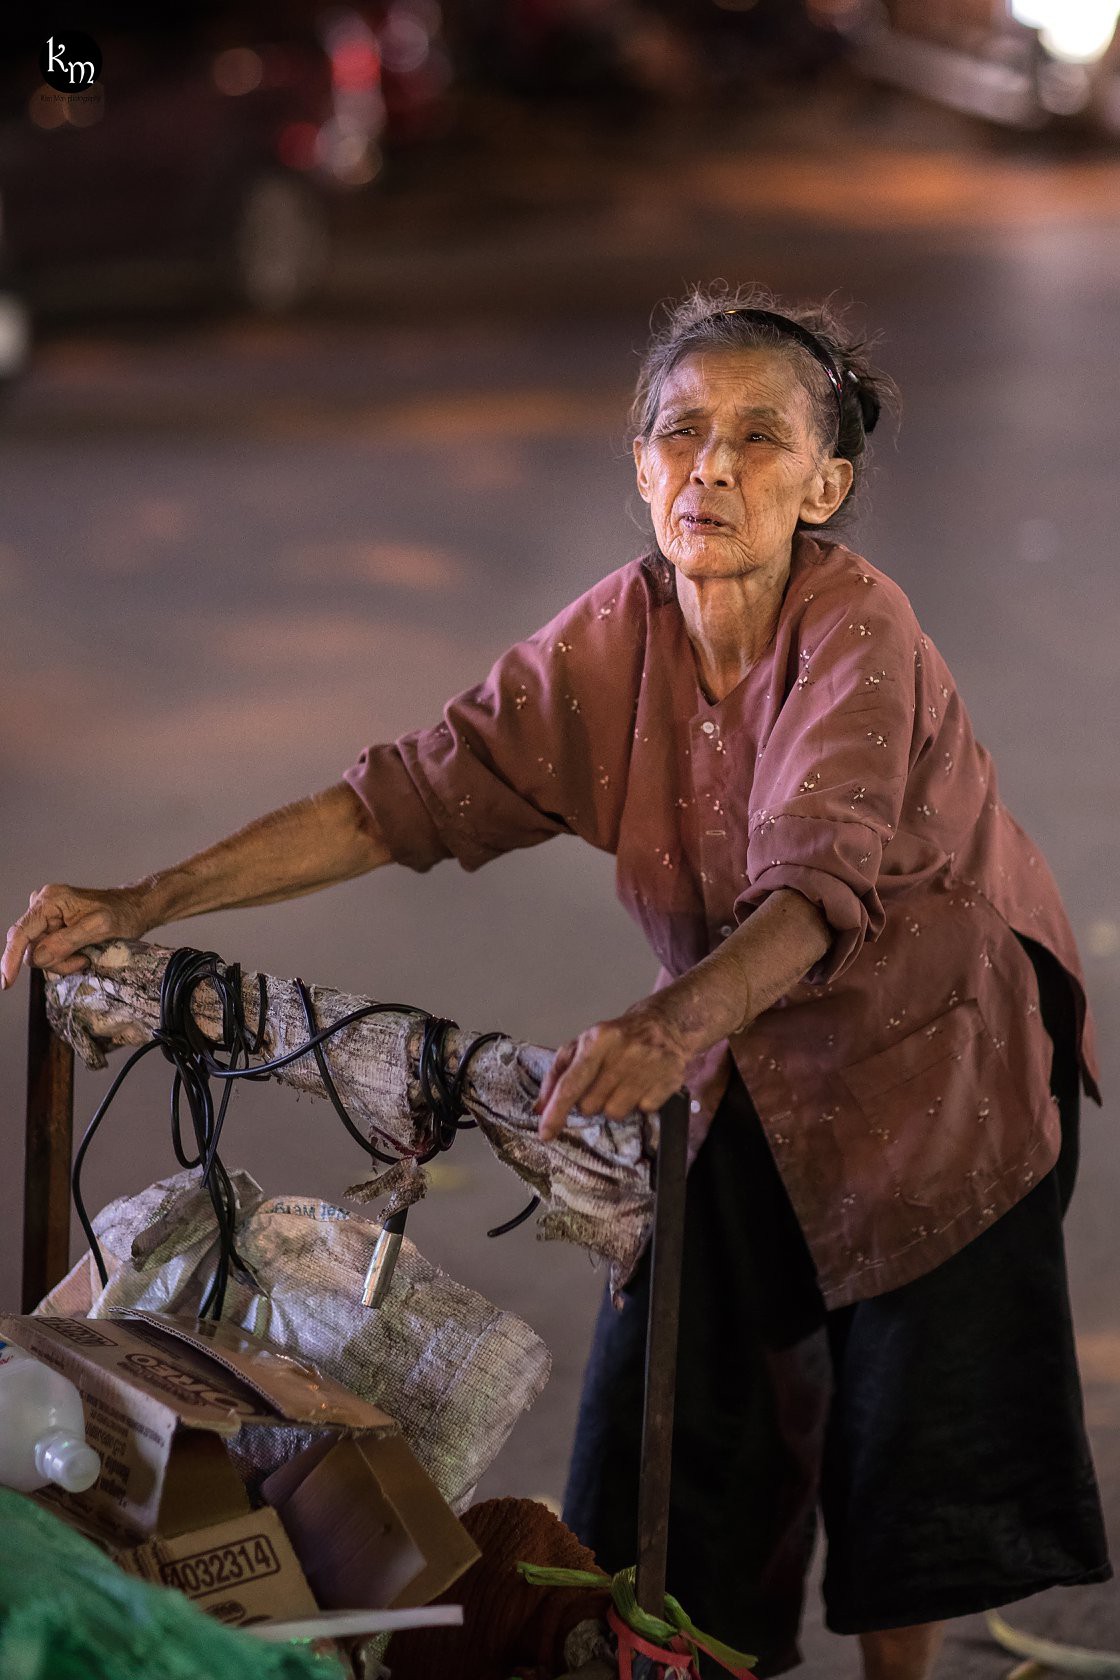 Rơi nước mắt hình ảnh cụ bà 83 tuổi lưng còng vất vả đi nhặt rác ...